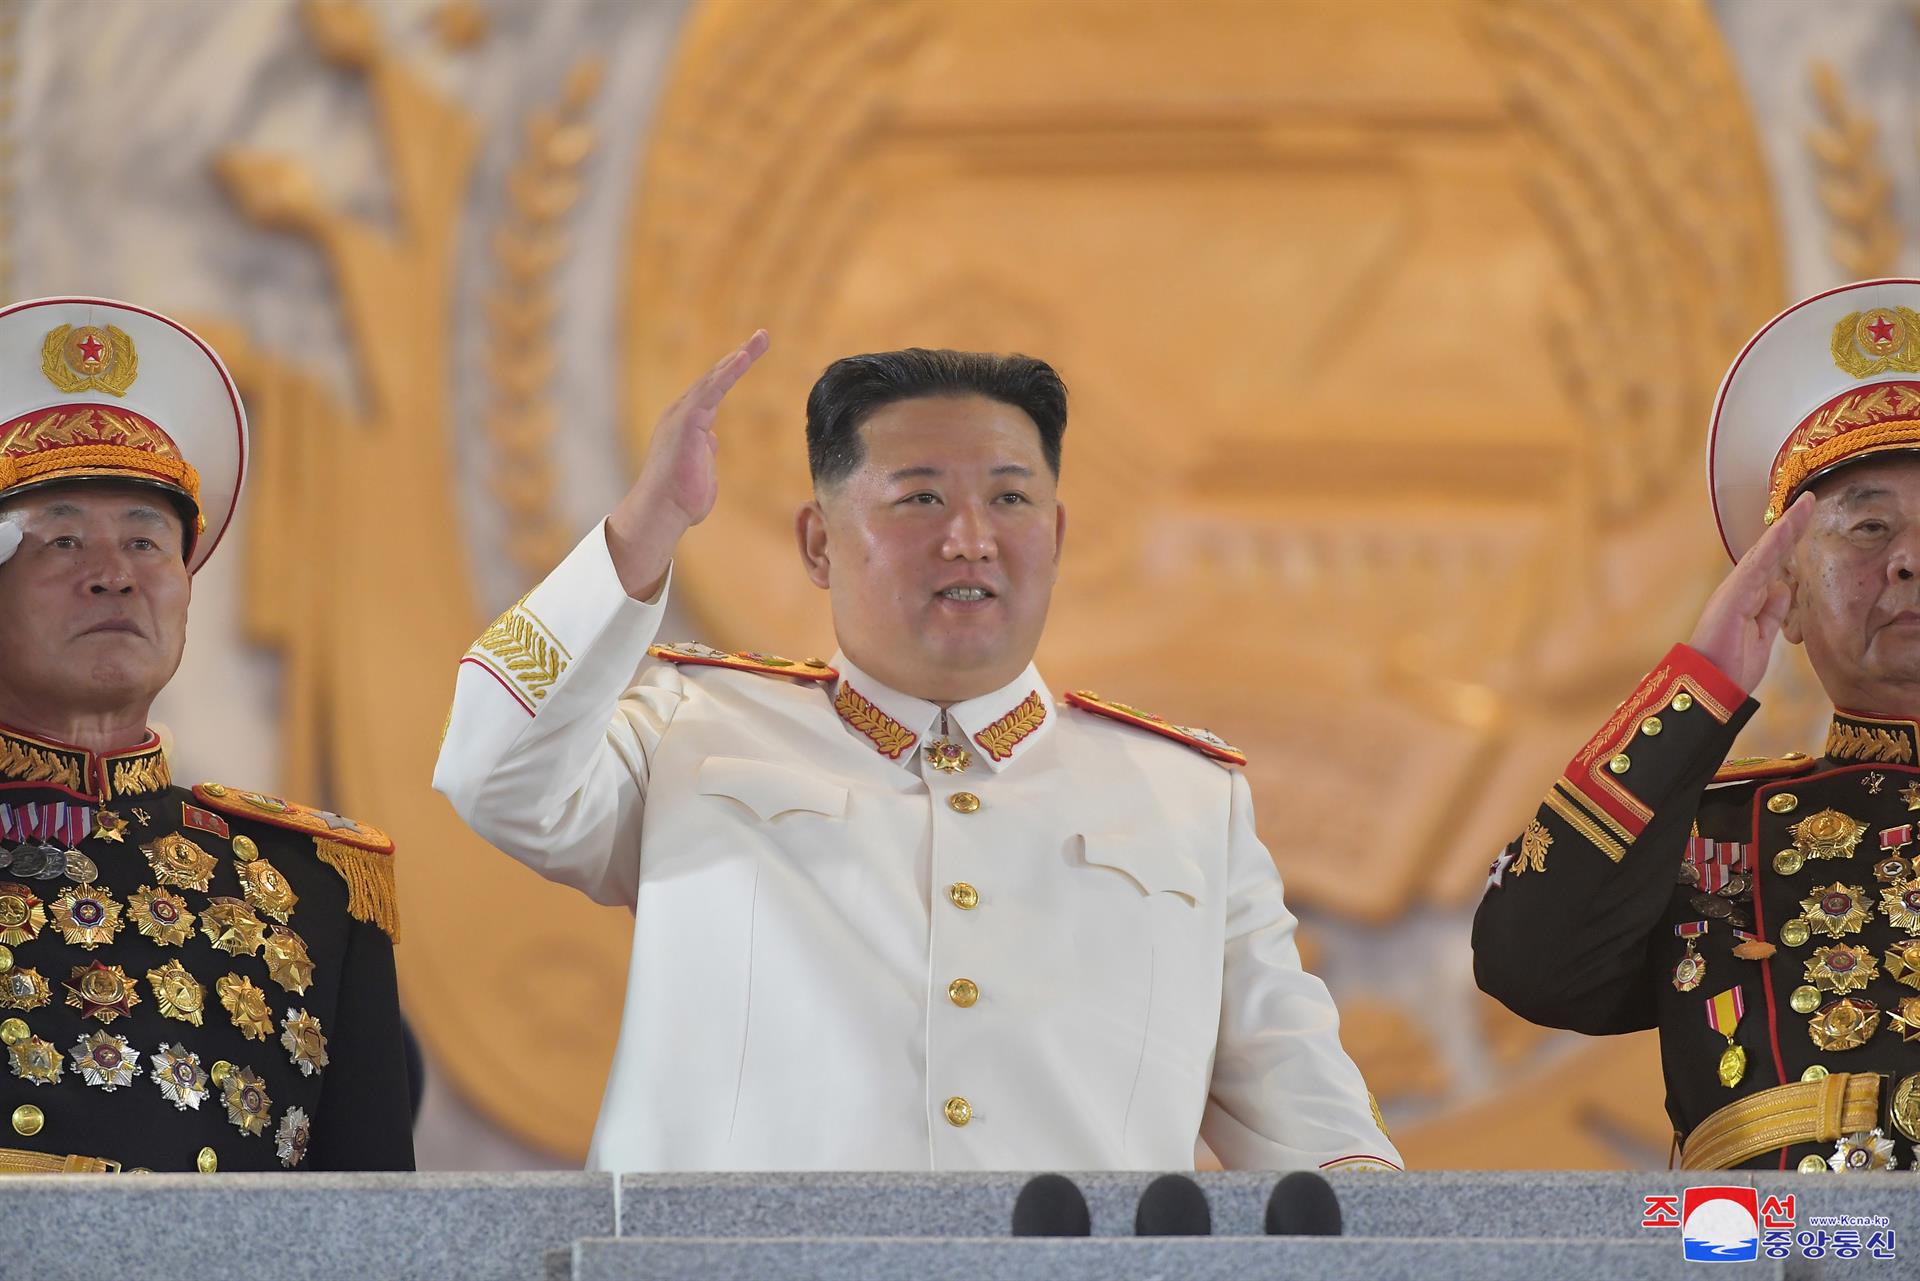 Kim Jong-un dice en desfile que ampliará poder nuclear “a la mayor velocidad”